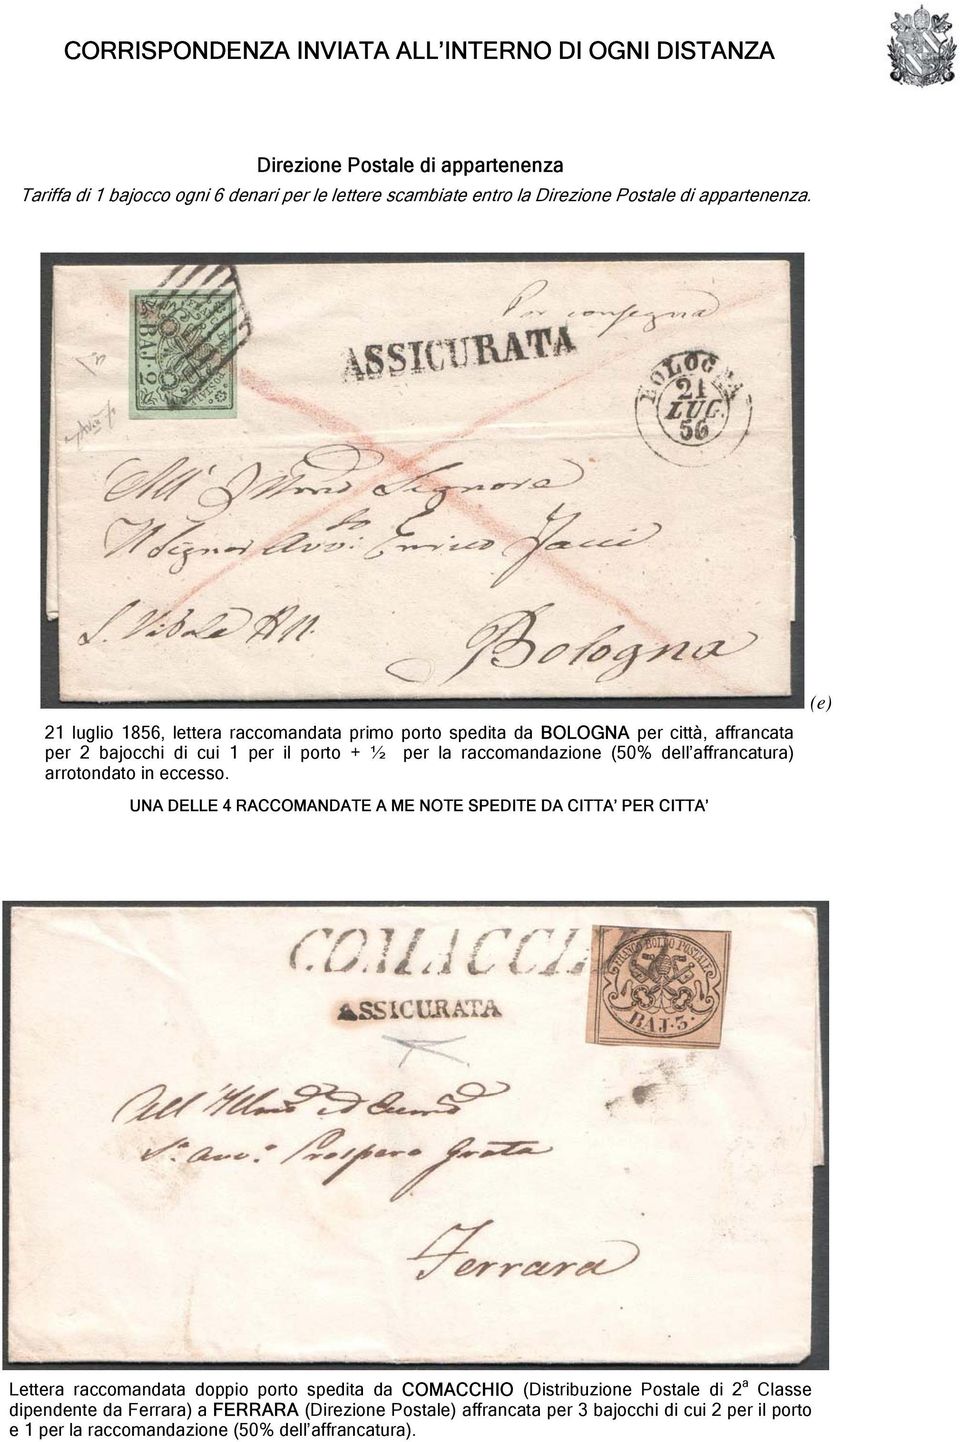 21 luglio 1856, lettera raccomandata primo porto spedita da BOLOGNA per città, affrancata per 2 bajocchi di cui 1 per il porto + ½ per la raccomandazione (50% dell